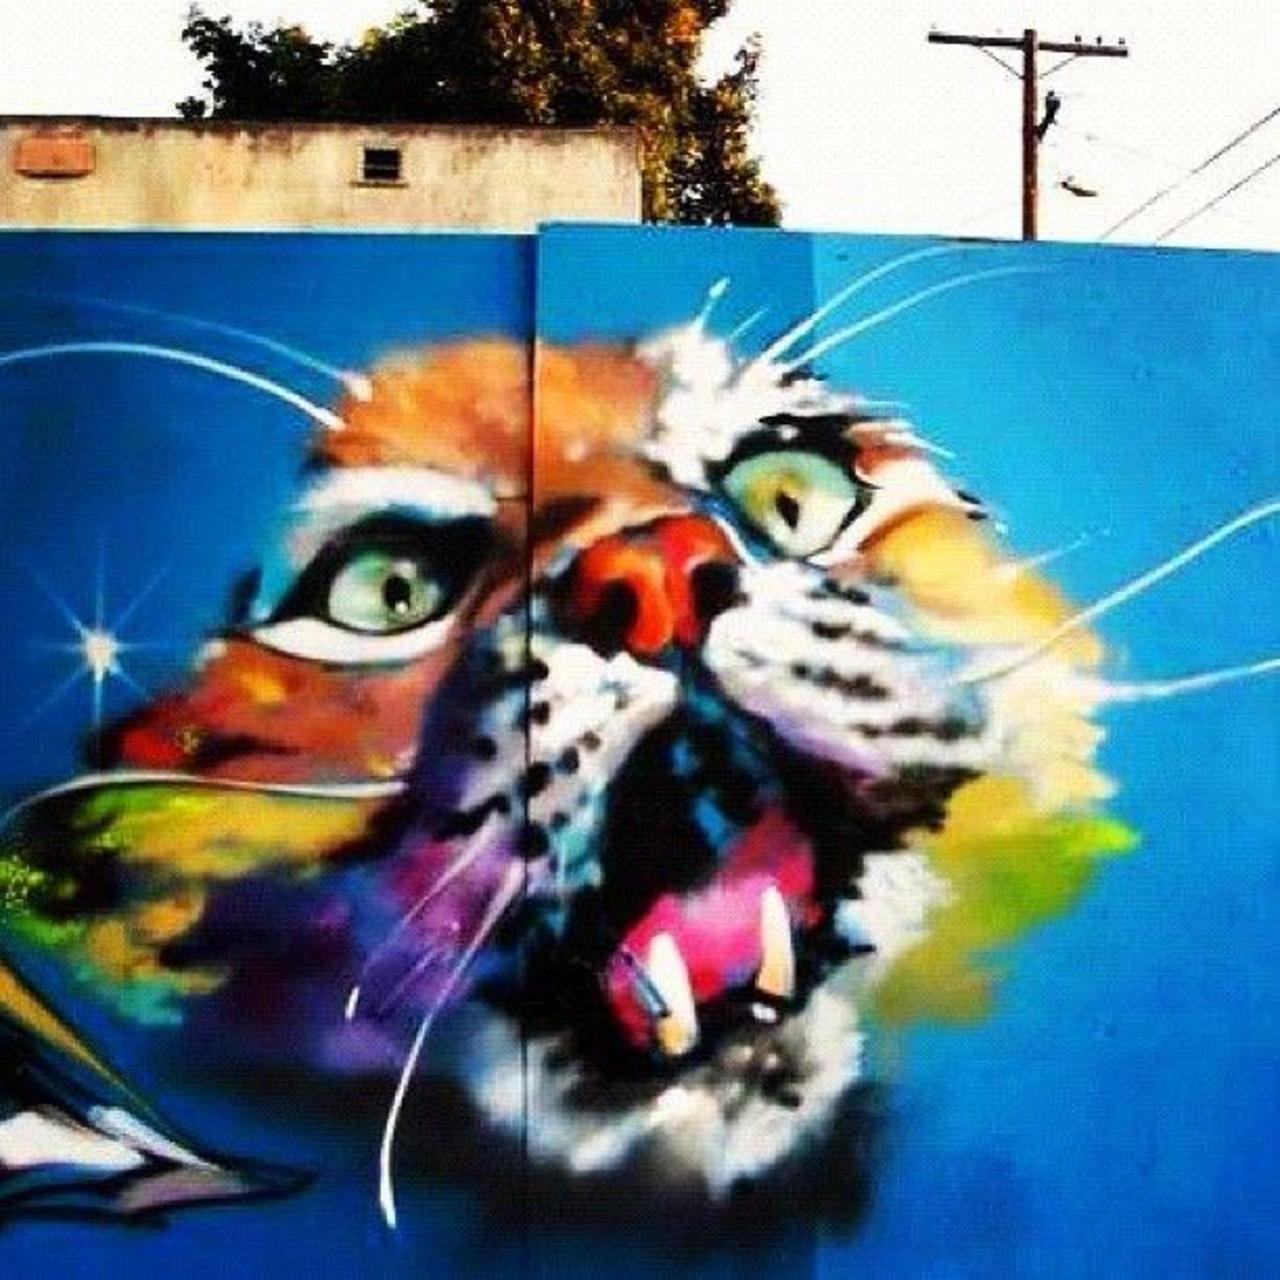 RT @5putnik1: Rainbow Tiger  • #streetart #graffiti #art #tiger #funky #dope . : http://t.co/f5eHwSYgc5